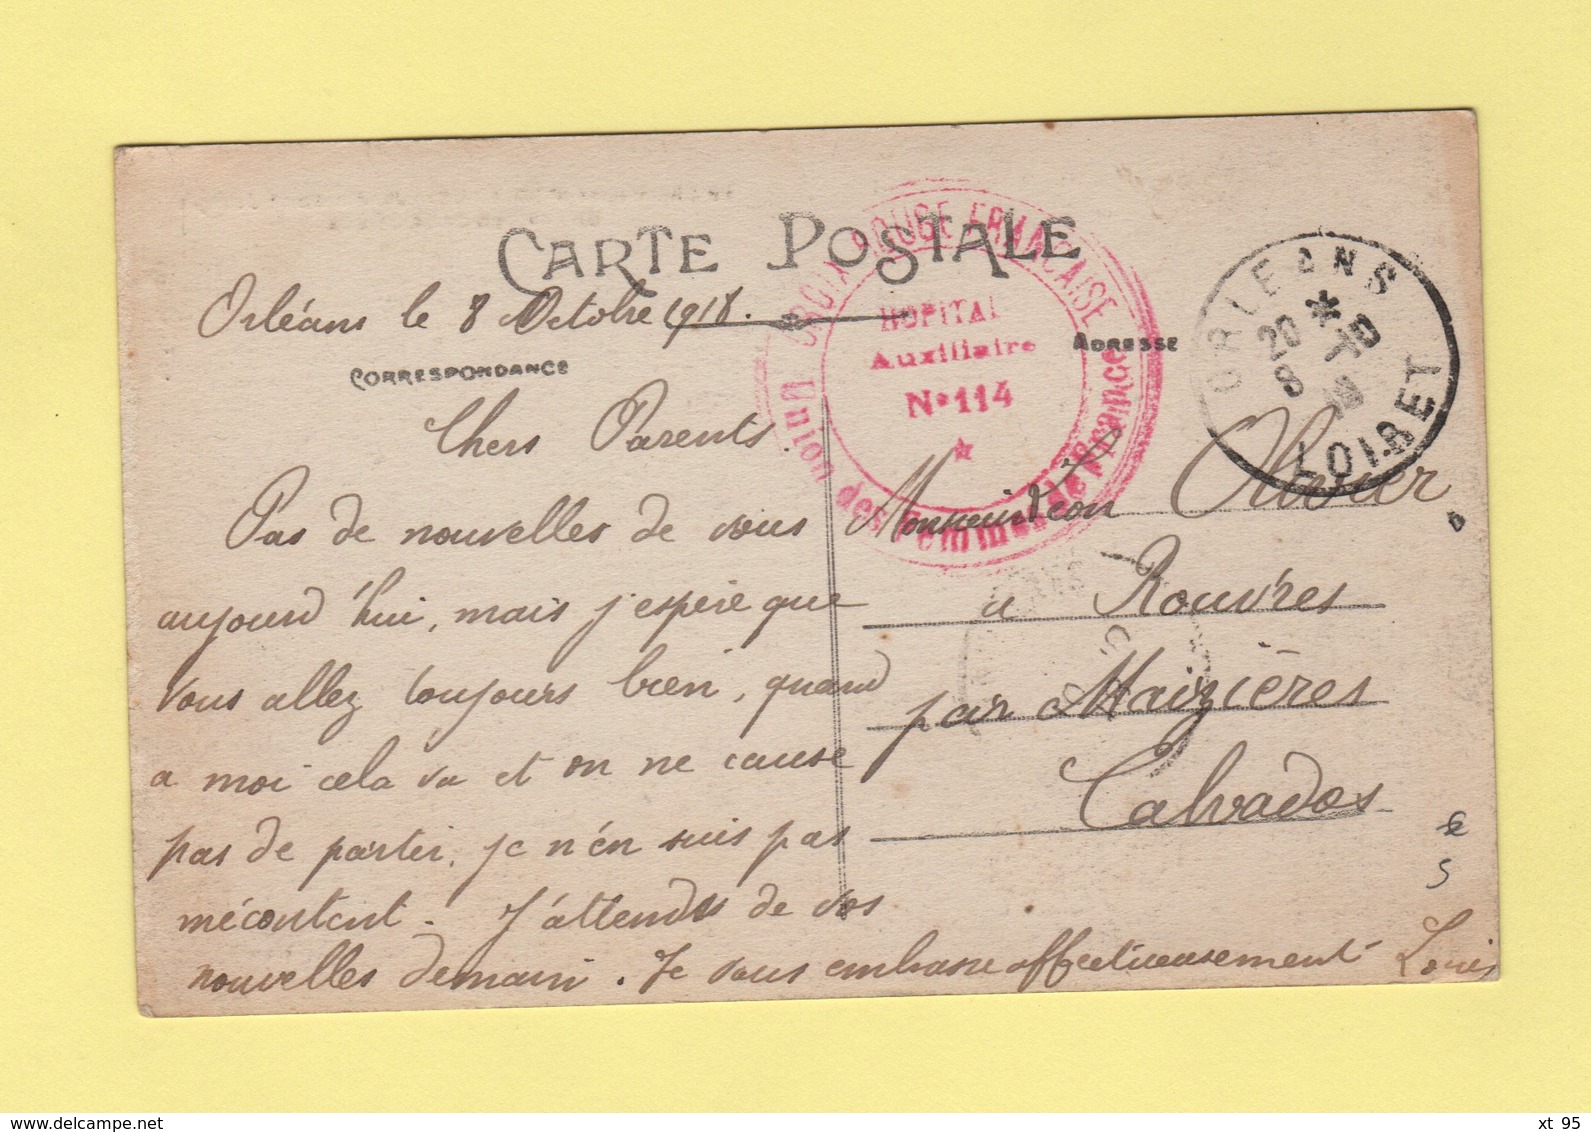 Hopital Auxiliaire N°114 - Orleans Loiret - 8-10-1918 - Croix Rouge Francaise - 2. Weltkrieg 1939-1945